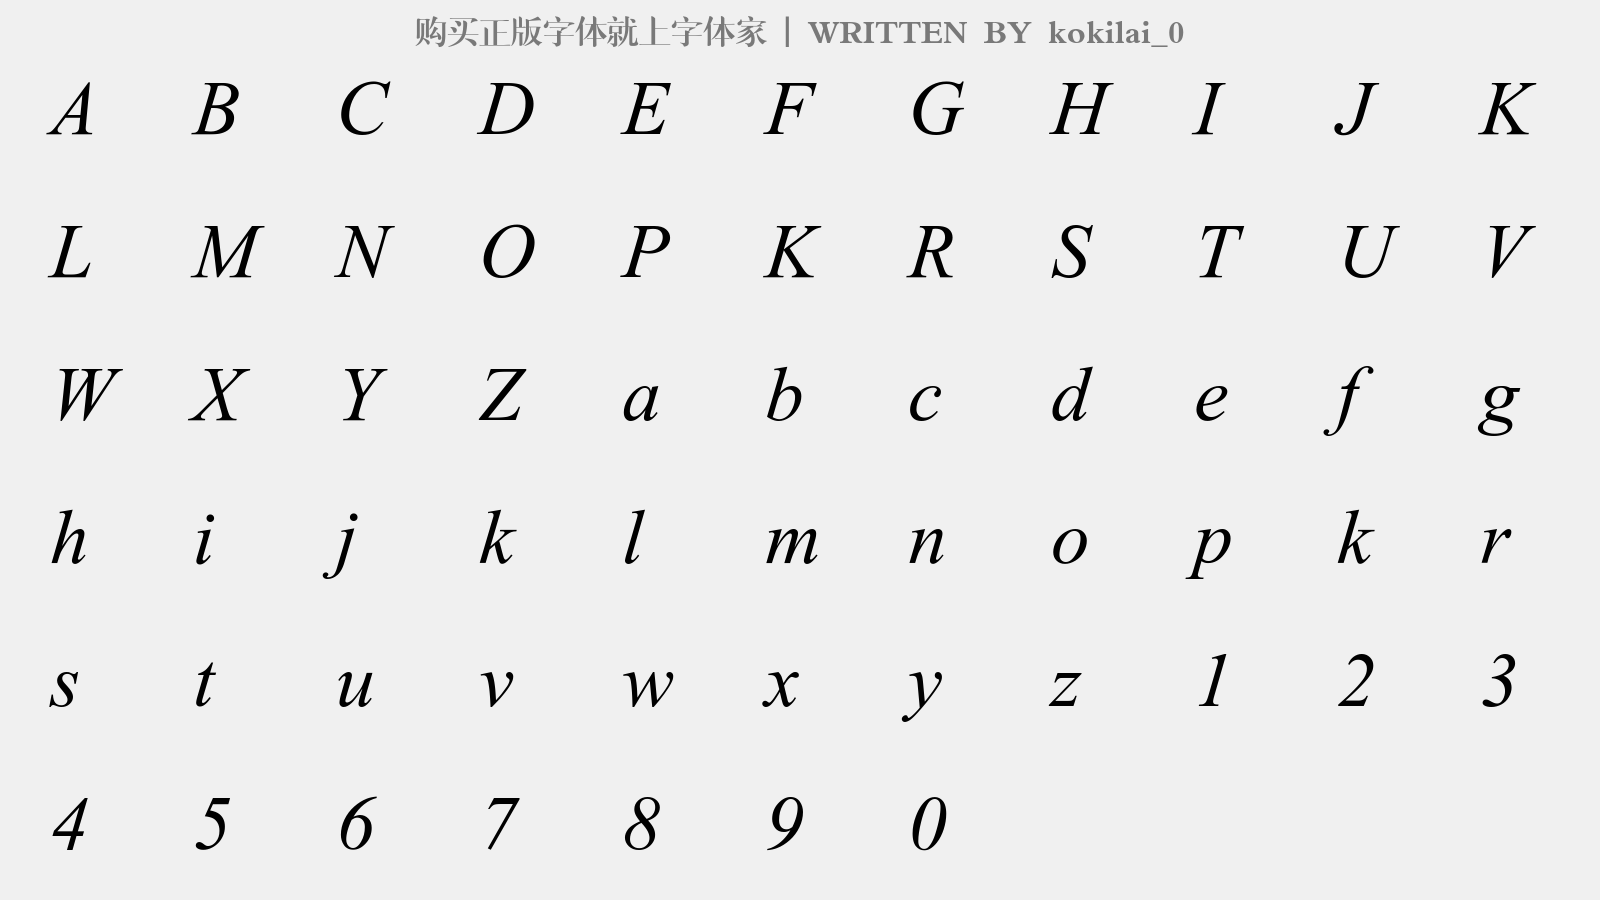 kokilai_0 - 大写字母/小写字母/数字